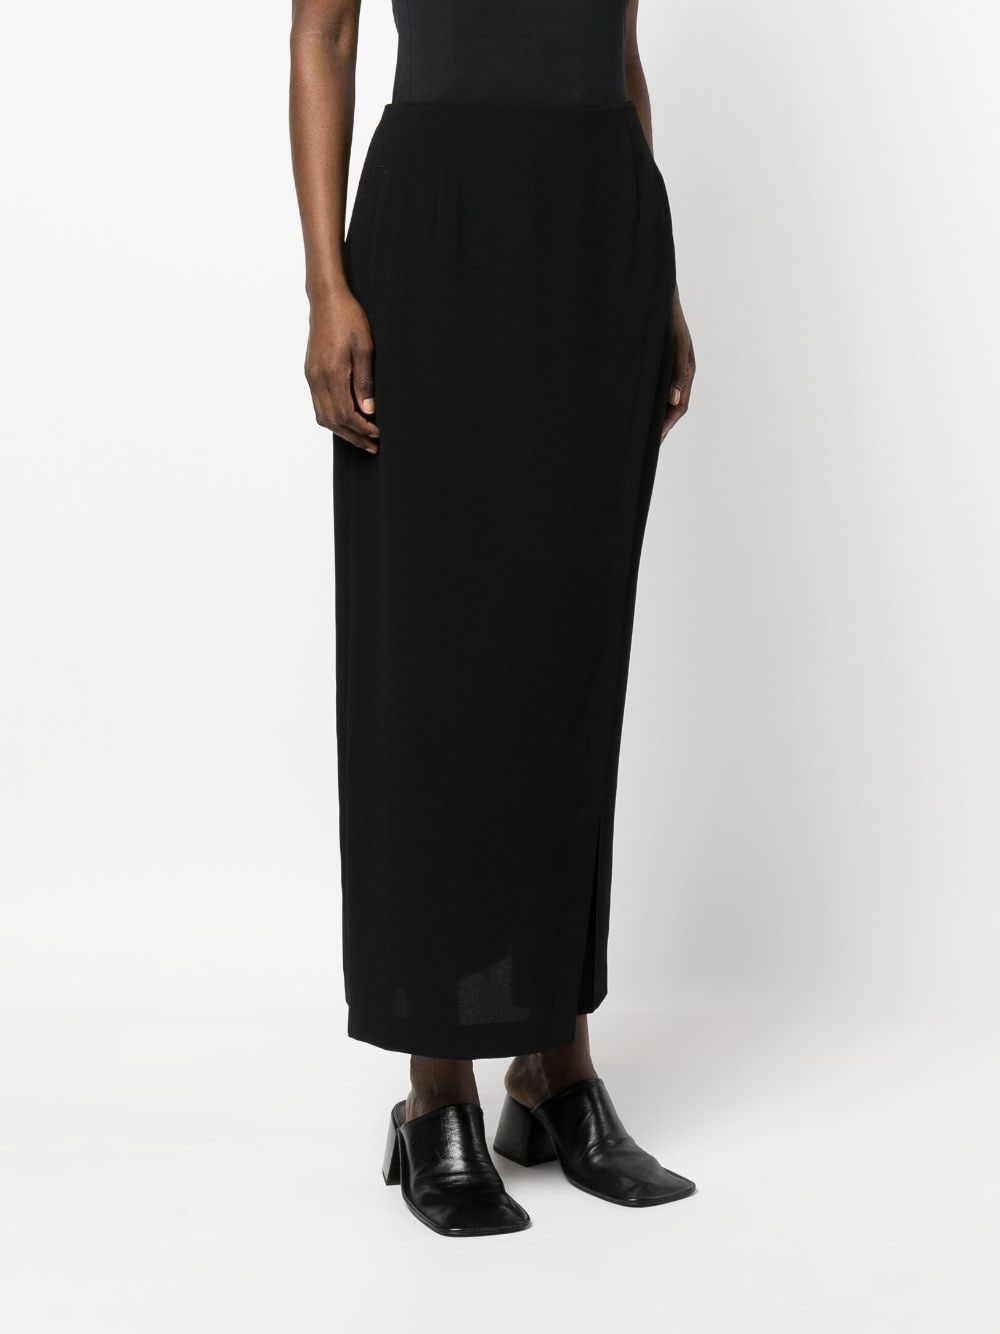 fitted-waistline long skirt - 3